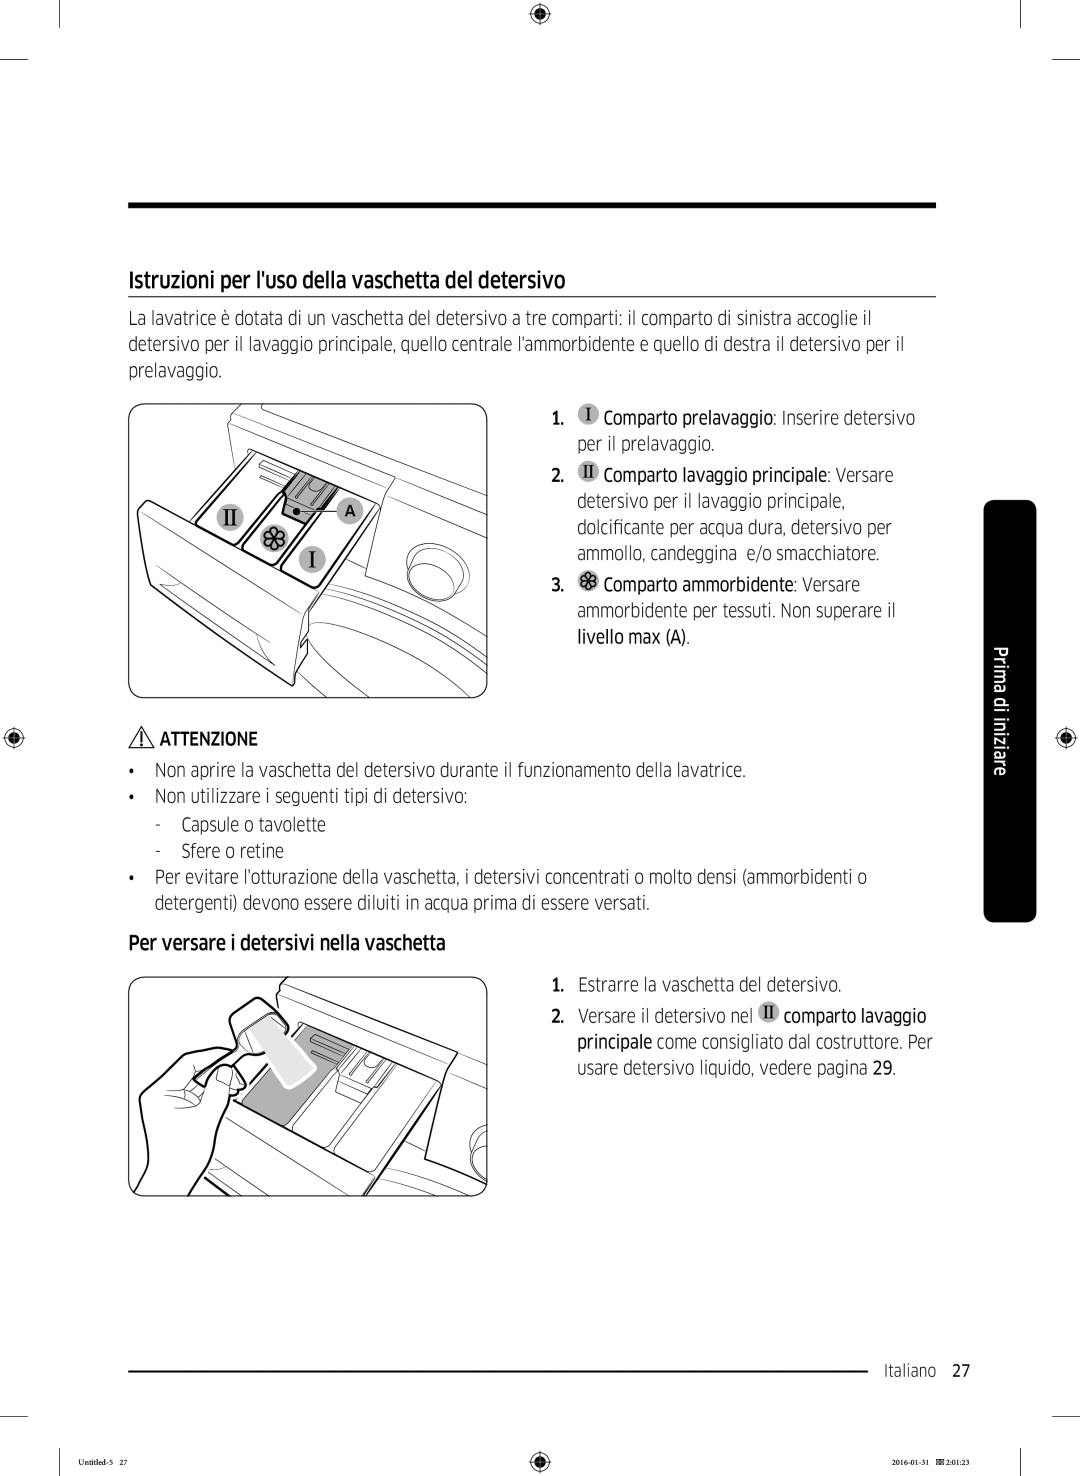 Samsung WW90K5400UW/EG manual Istruzioni per luso della vaschetta del detersivo, Per versare i detersivi nella vaschetta 